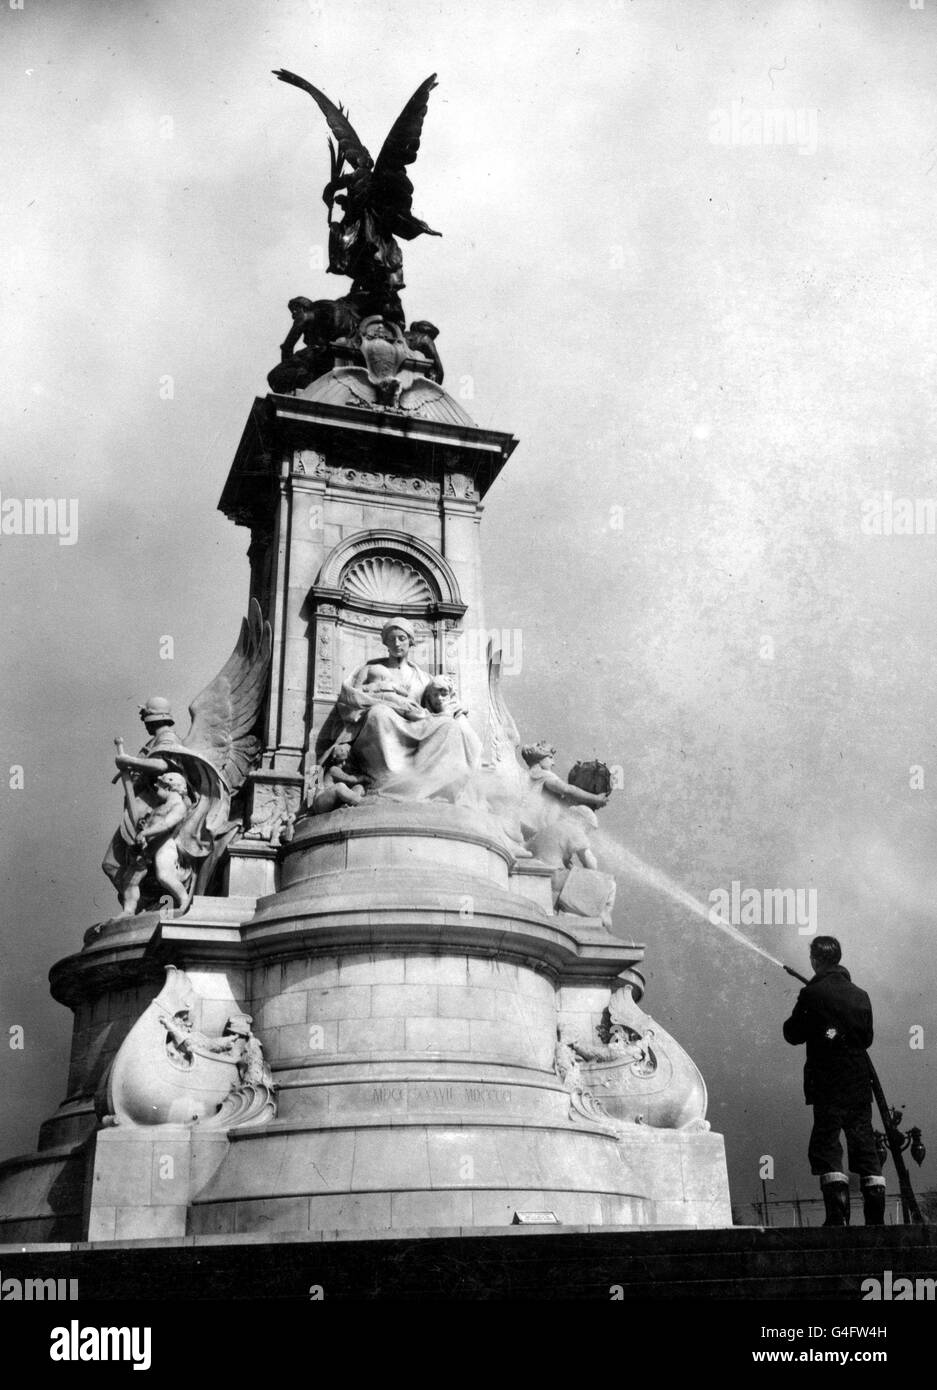 Das Queen Victoria Memorial vor dem Buckingham Palace, London, mit einem speziellen Krönungsjahr zum Waschen und Auffrischen. Bald werden Krönungsstände dieses 42 Jahre alte Denkmal umgeben, das aus 2300 Tonnen Carrara-Marmor gefertigt und durch ein Empire-Abonnement bezahlt wurde. Stockfoto